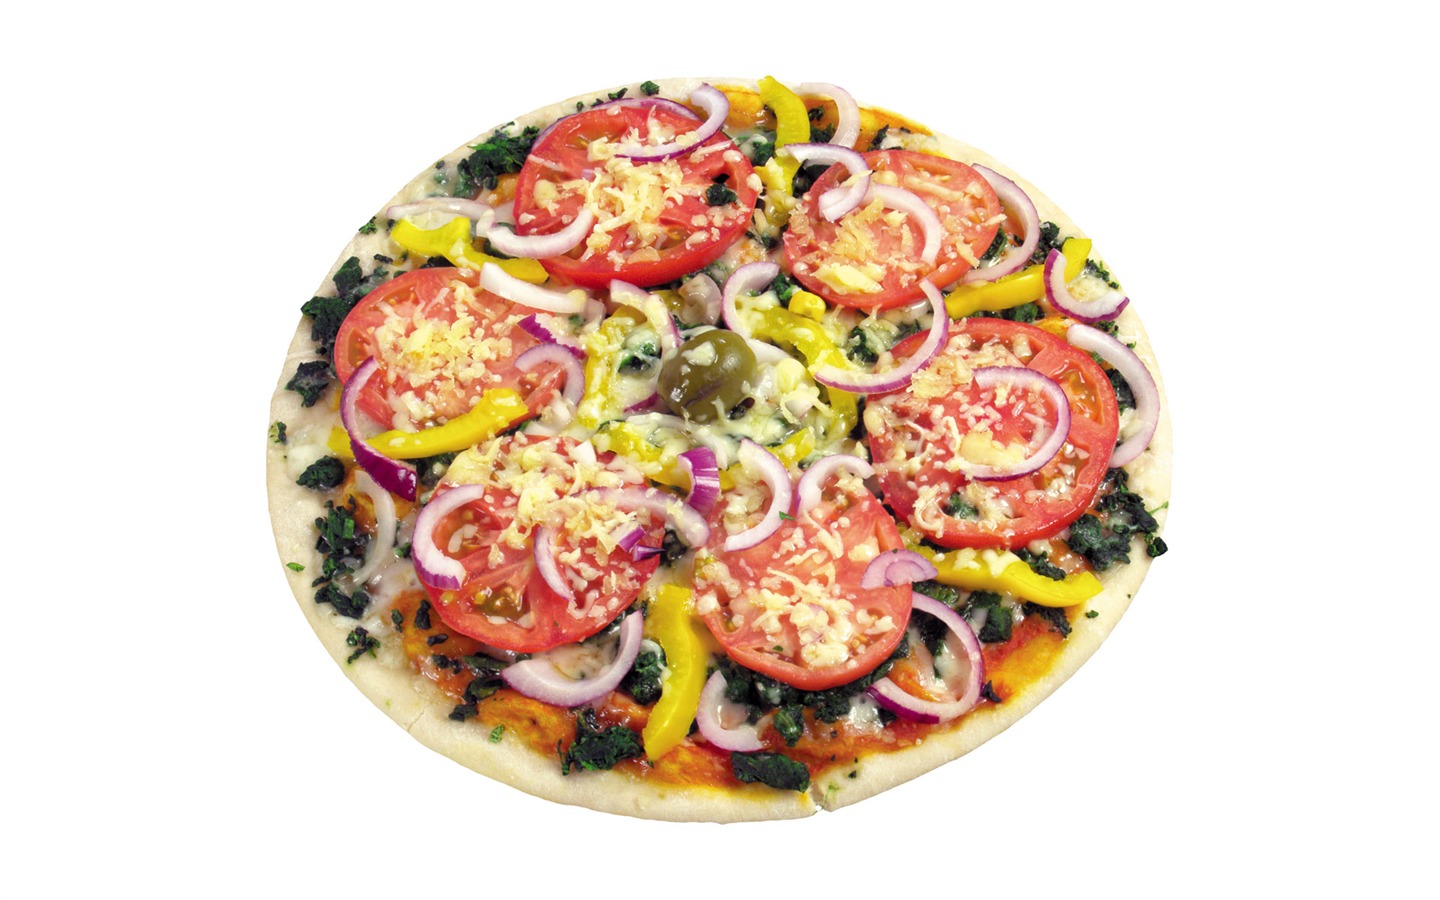 Fondos de pizzerías de Alimentos (3) #4 - 1440x900